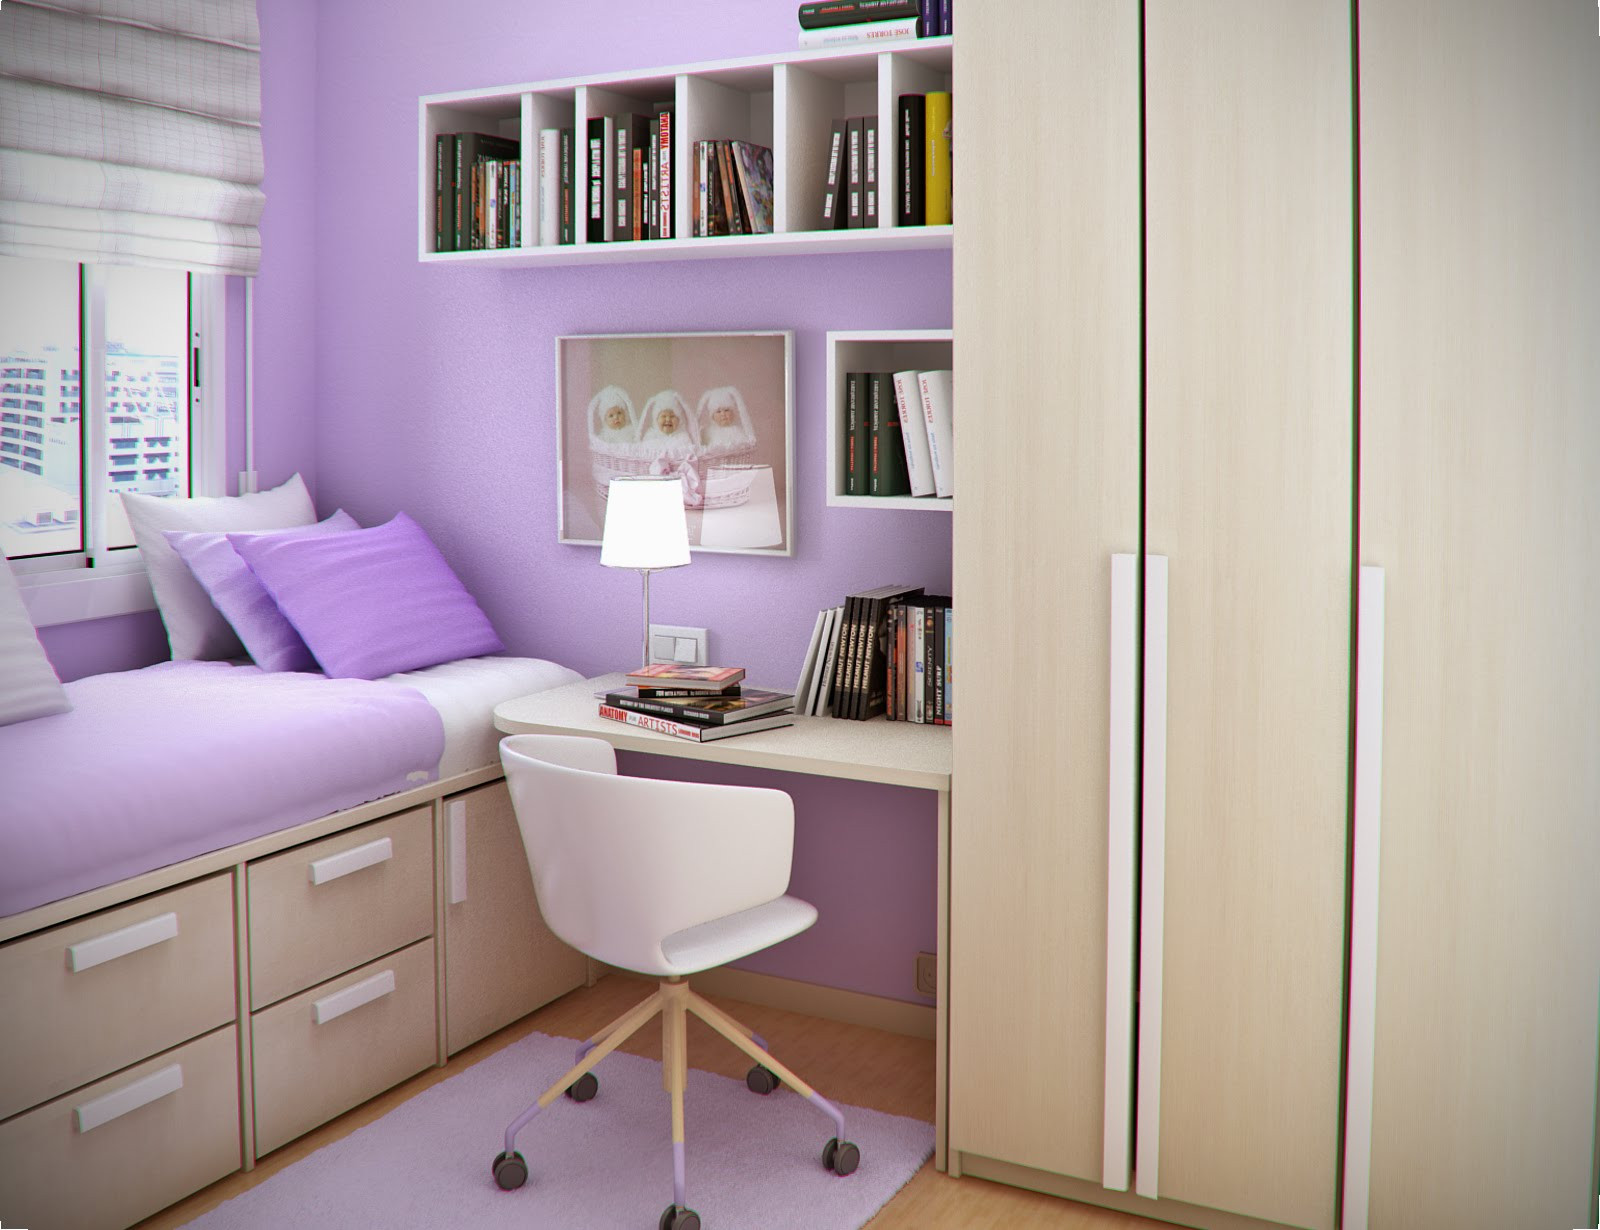 Small Desk For Bedroom
 Small Bedroom Desks – HomesFeed